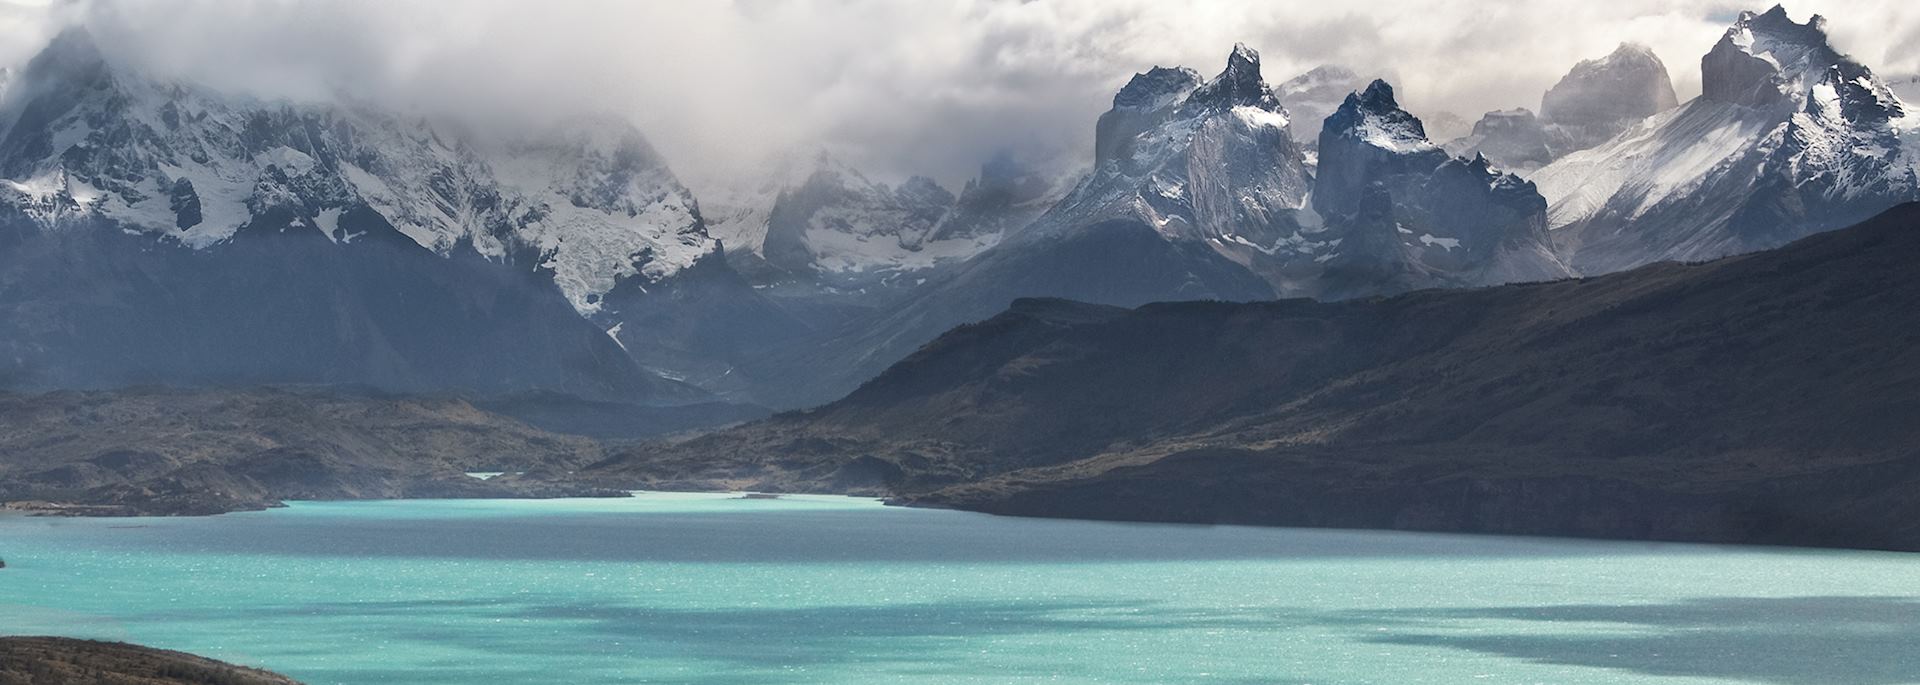 Mountain lake, Patagonia